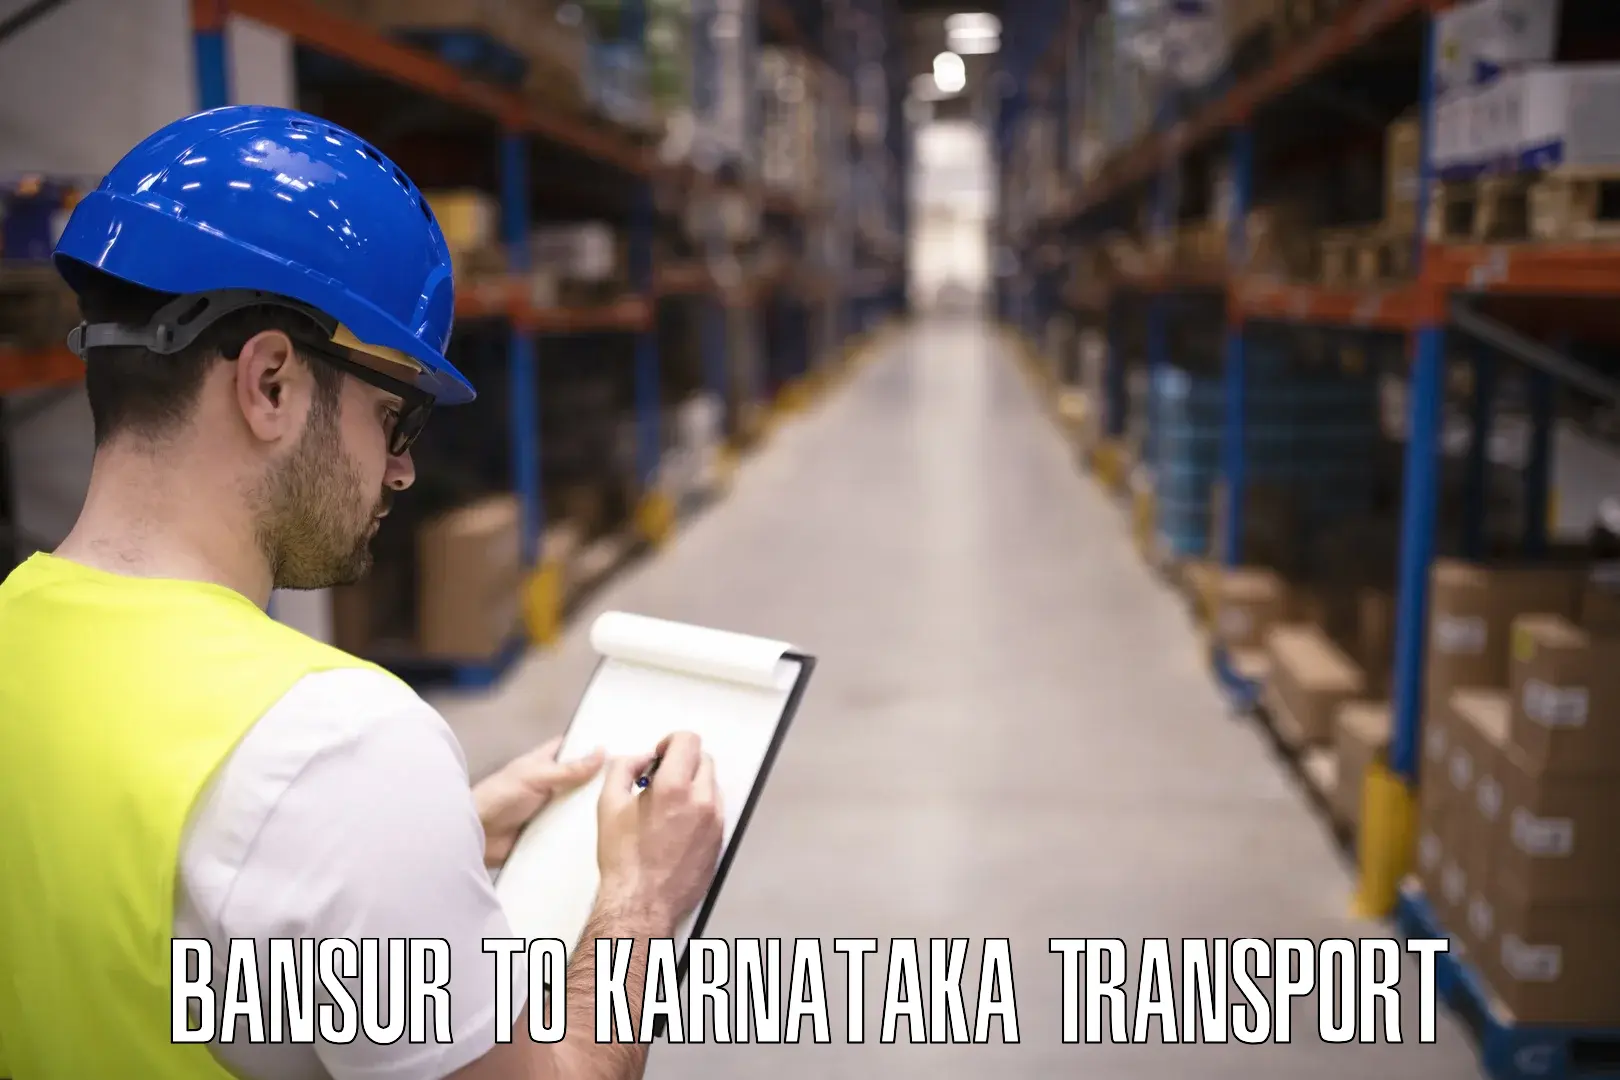 Pick up transport service Bansur to Karnataka